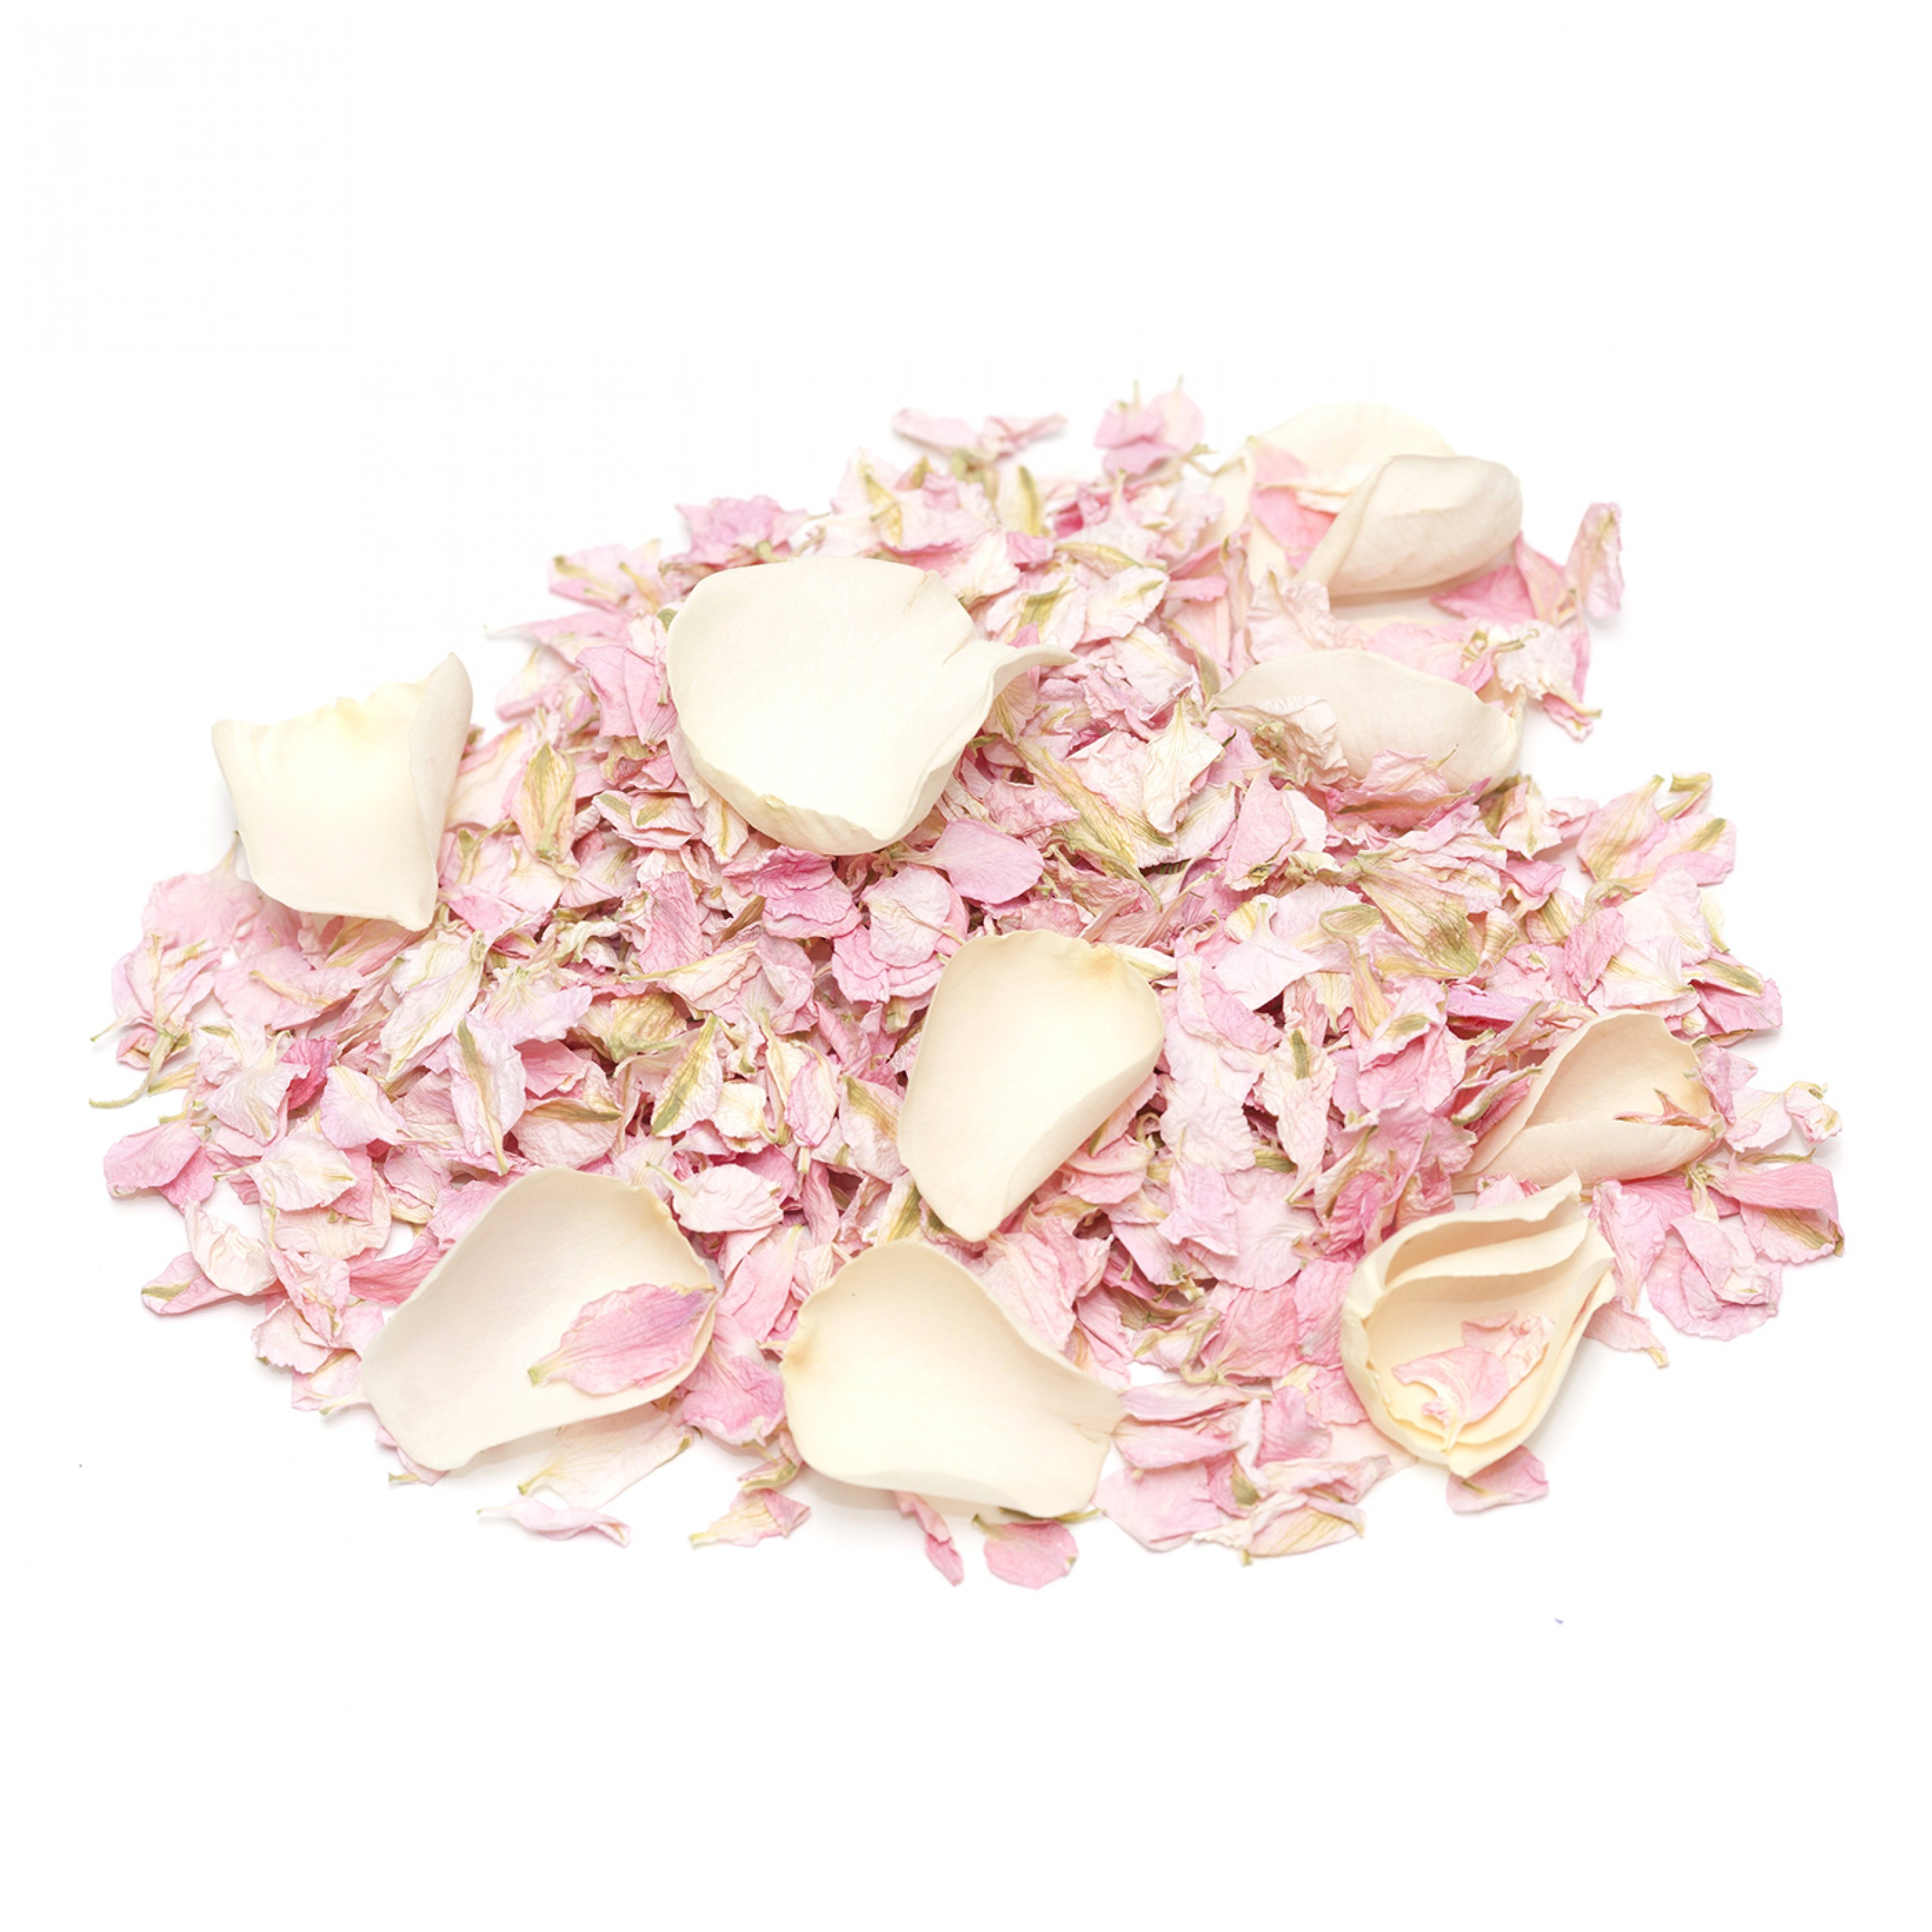 X1 Pint Biodegradable Fresh Blush Pink Rose Petal Confetti Throwing Wedding UK 